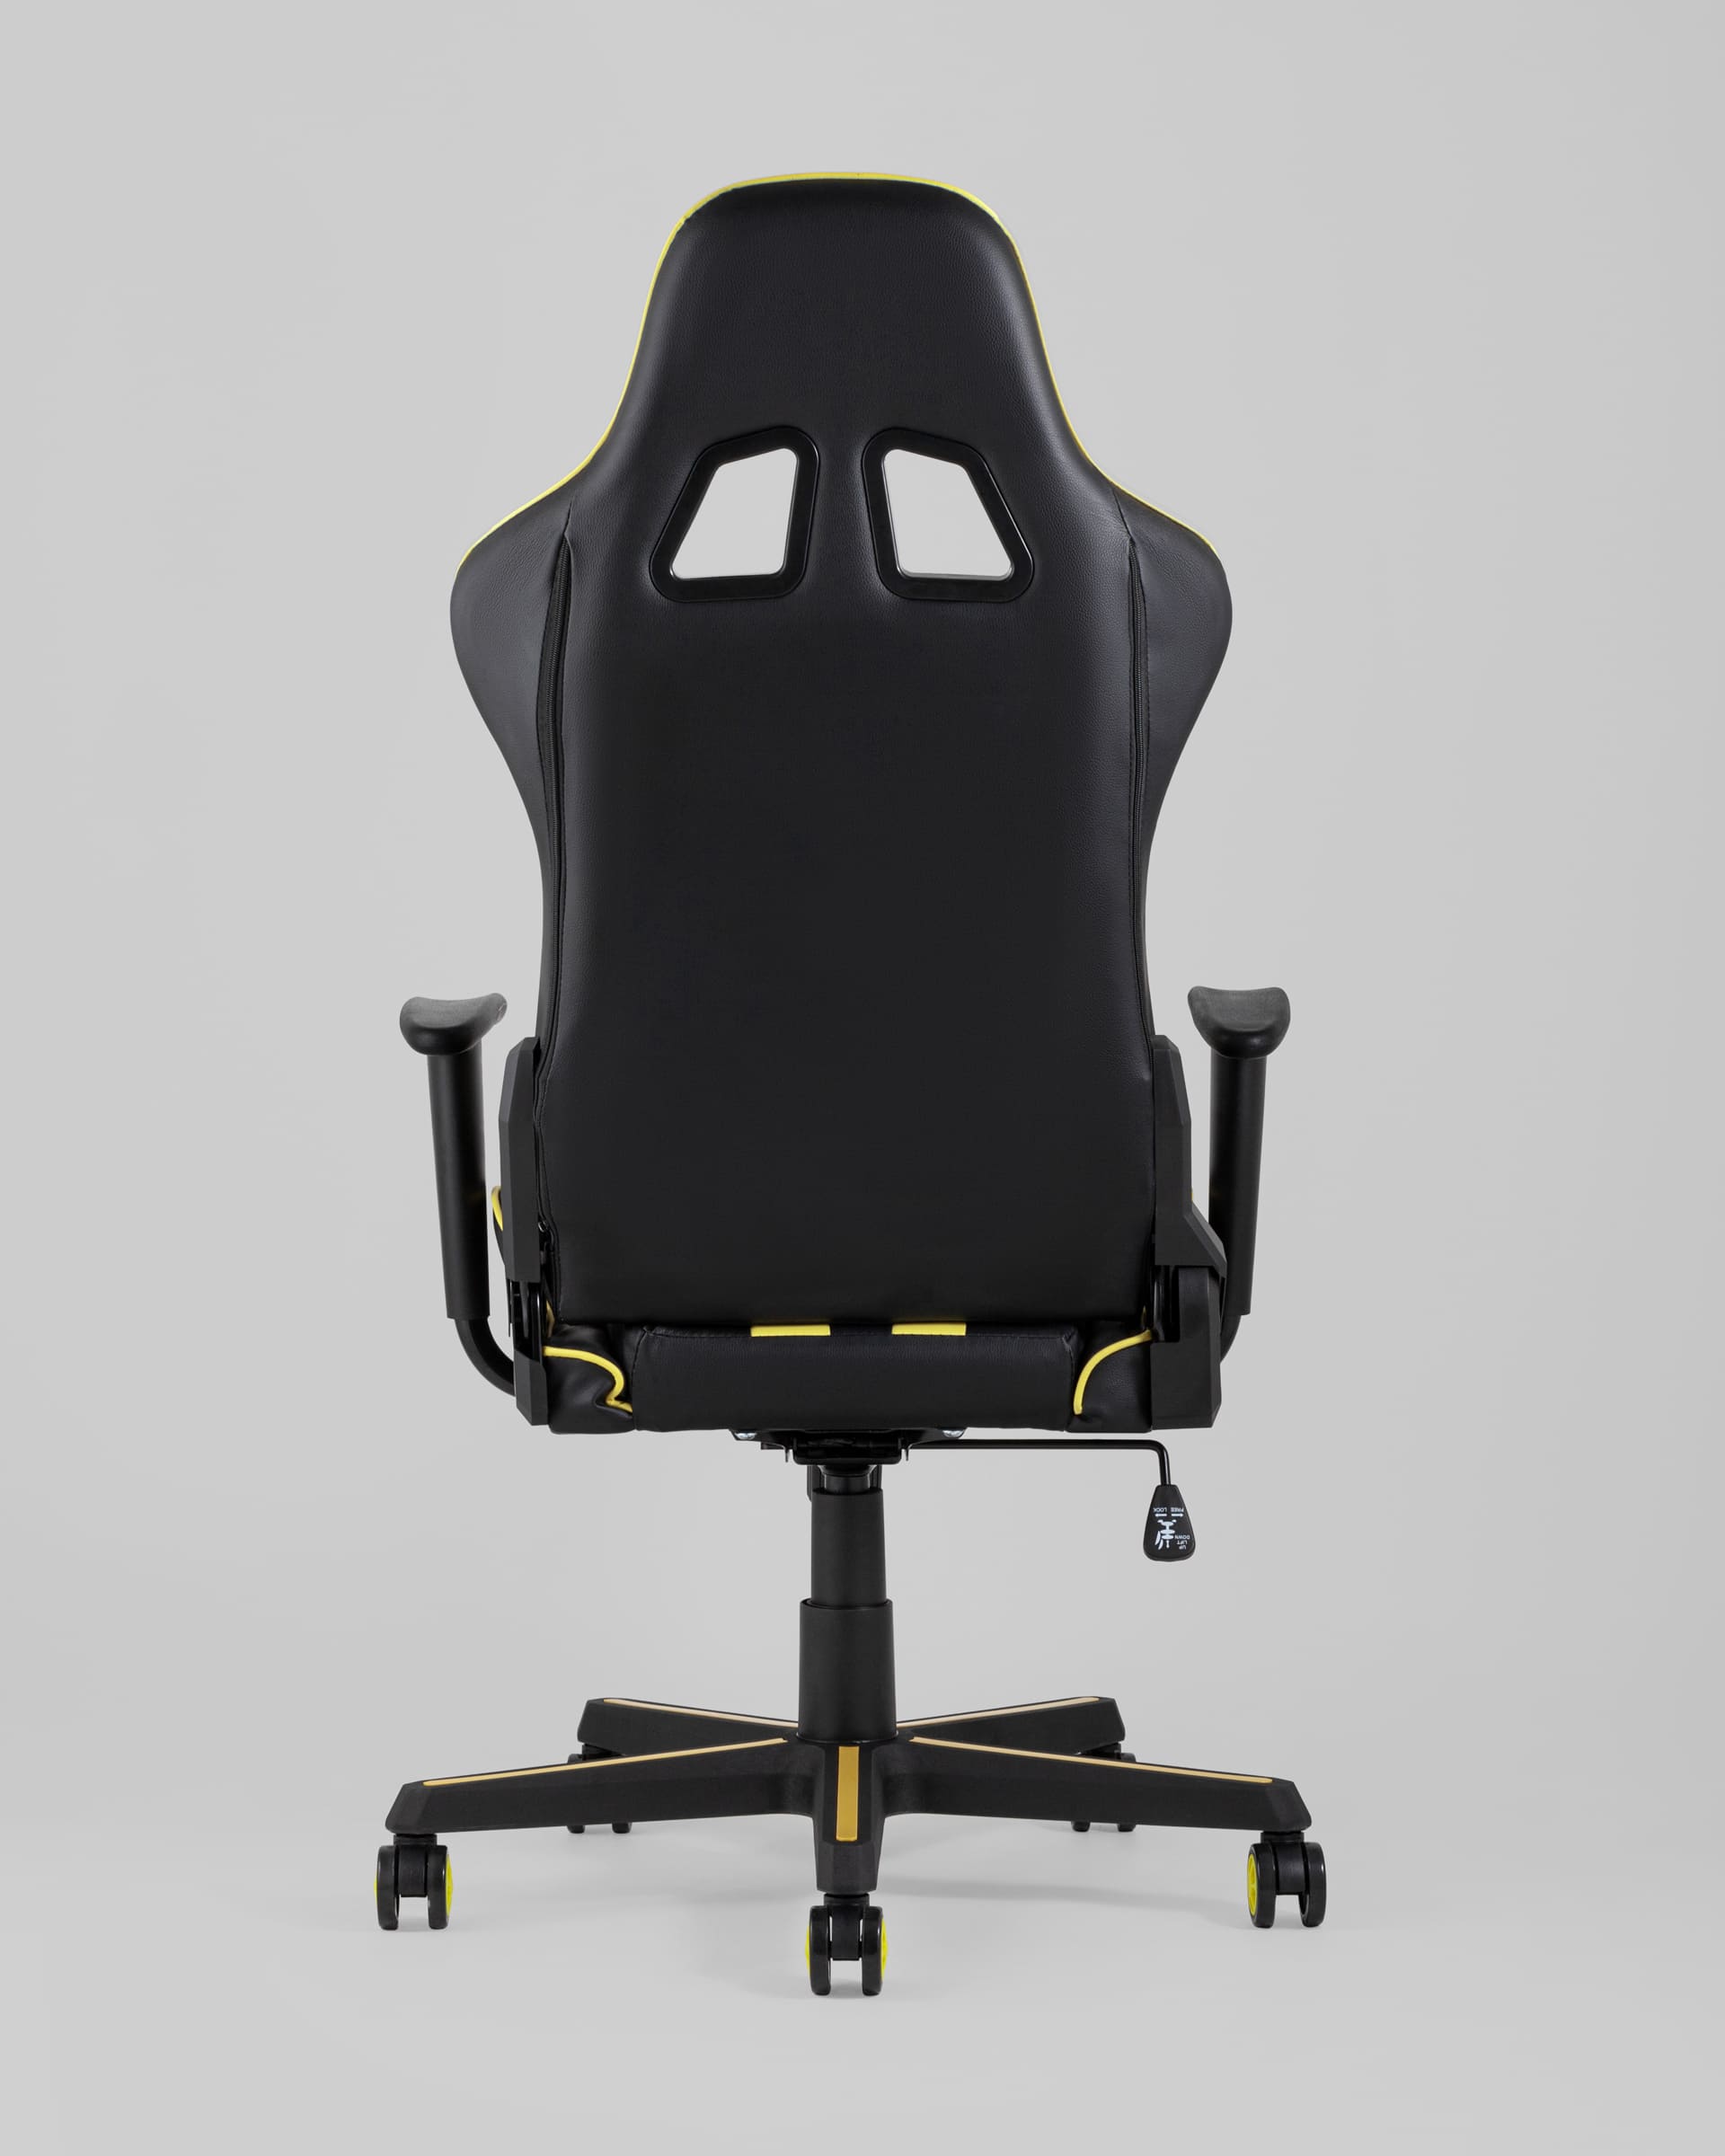 Кресло игровое TopChairs Camaro желтое